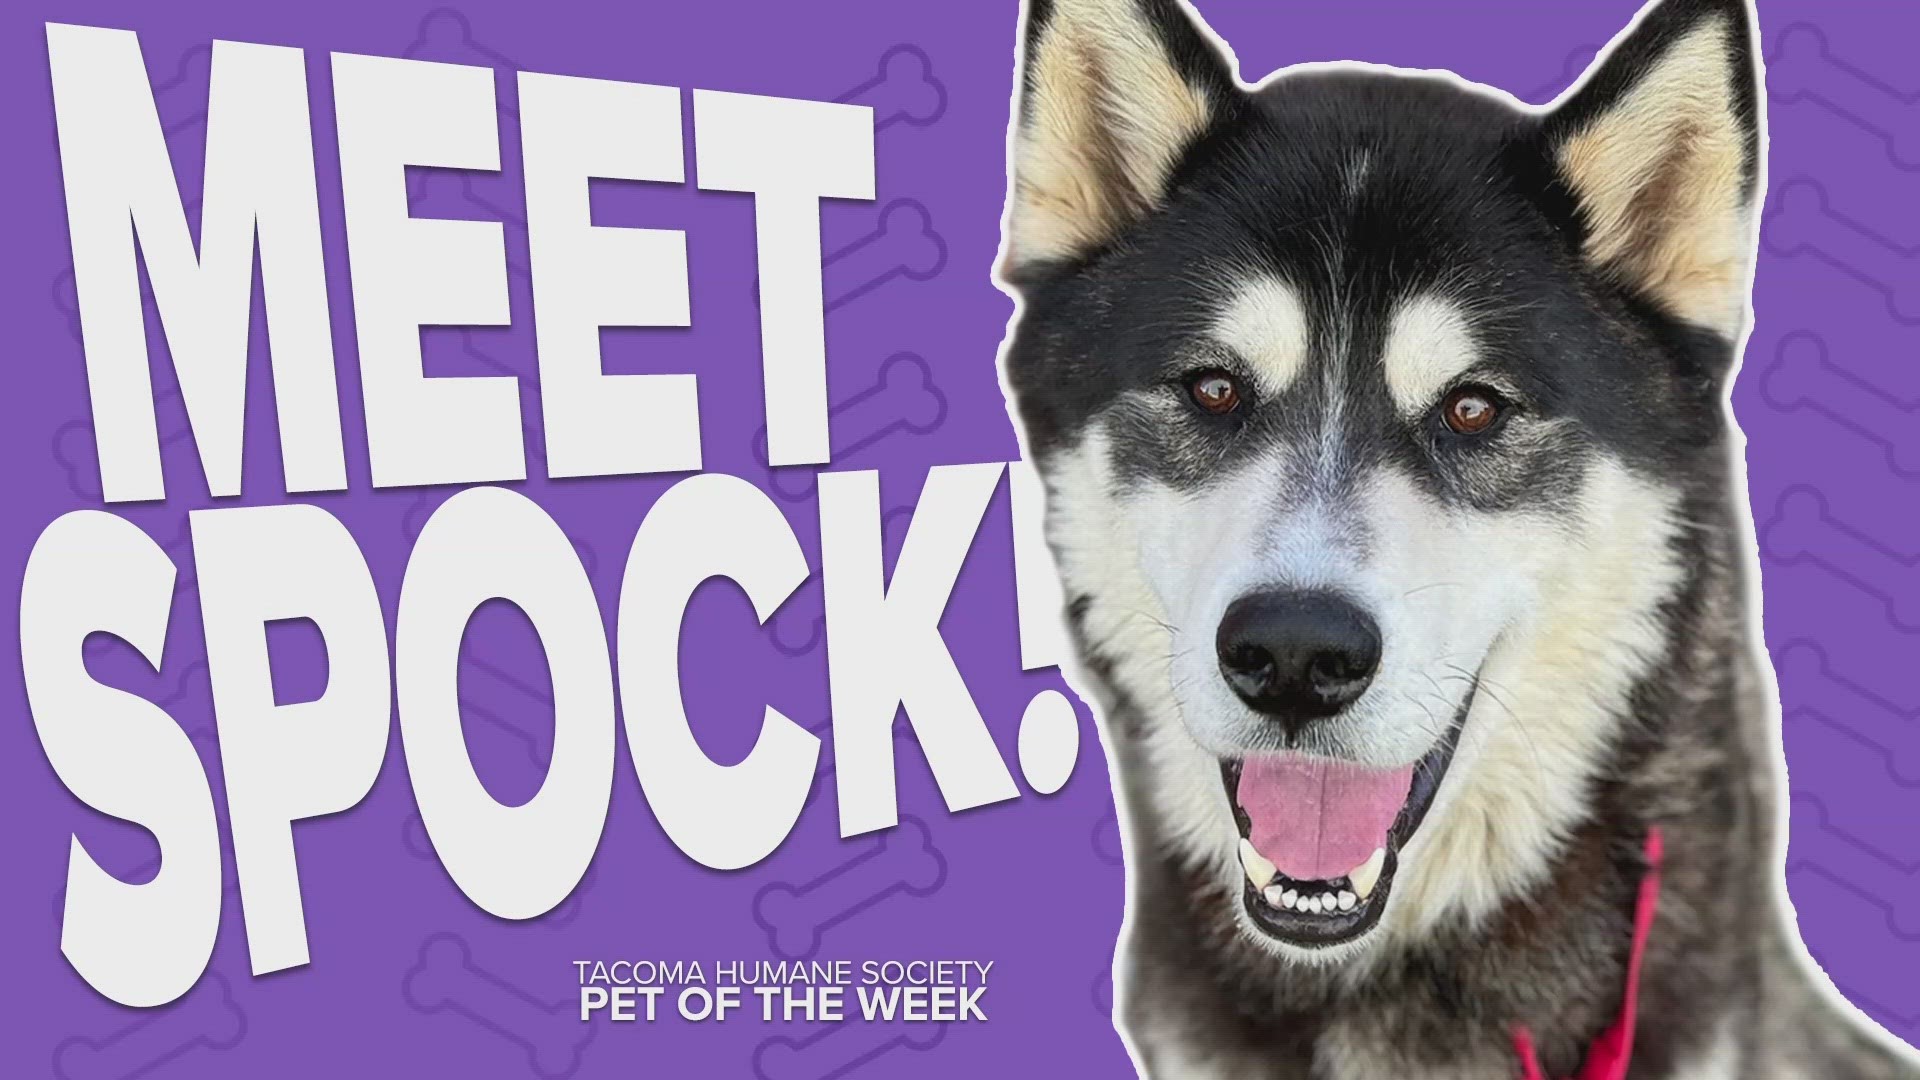 This week's adoptable pet of the week is Spock!